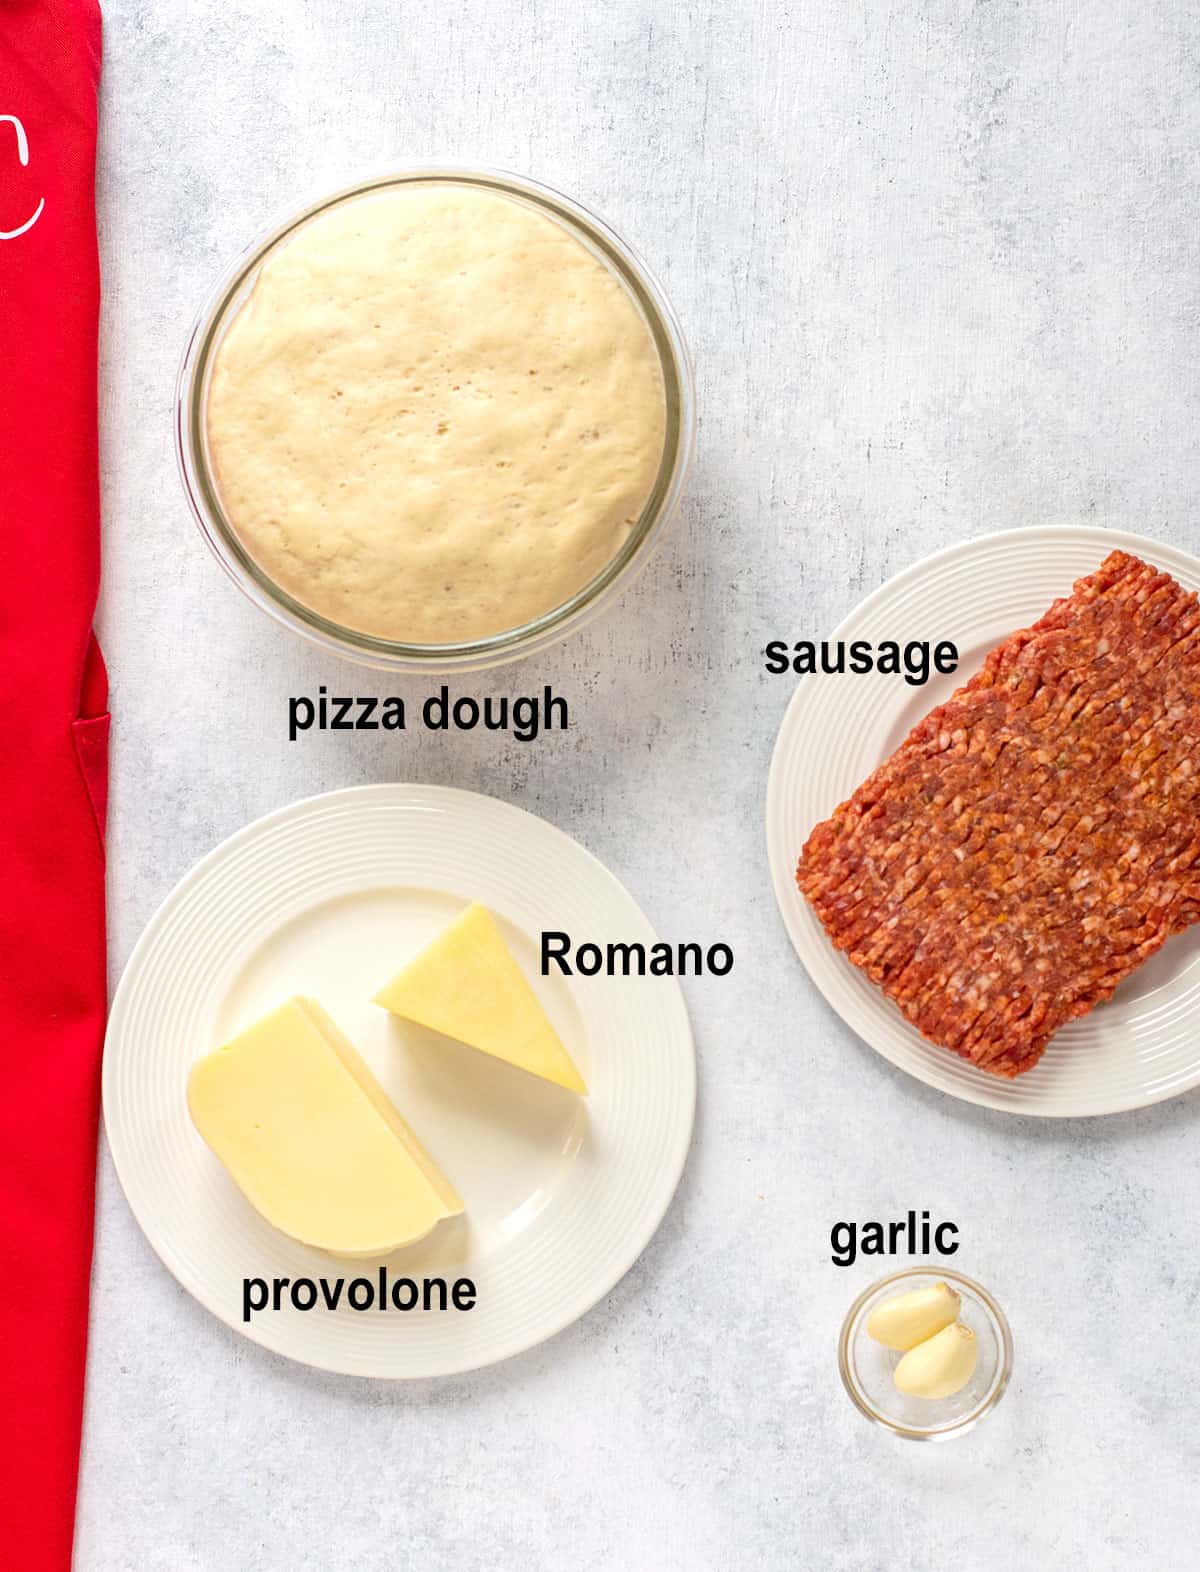 pizza dough, sausage, romano, provolone, garlic.